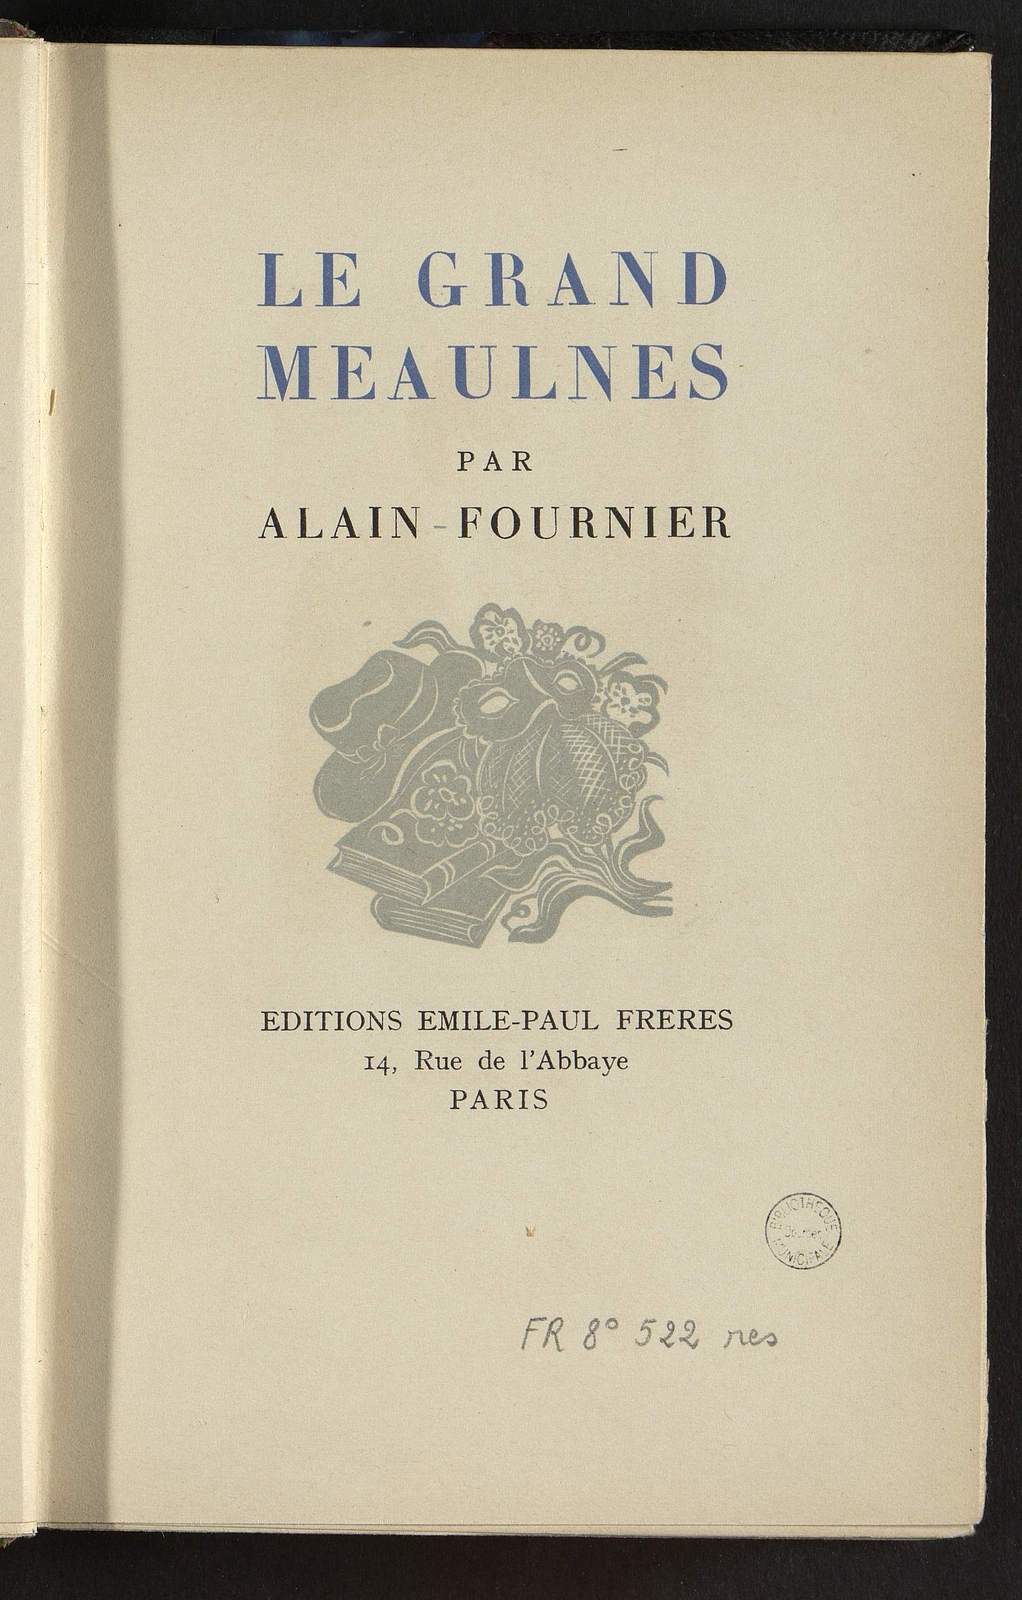 Le Grand Meaulnes, L'évasion, illustré par Colyn, Emile-Paul Frères, 1941